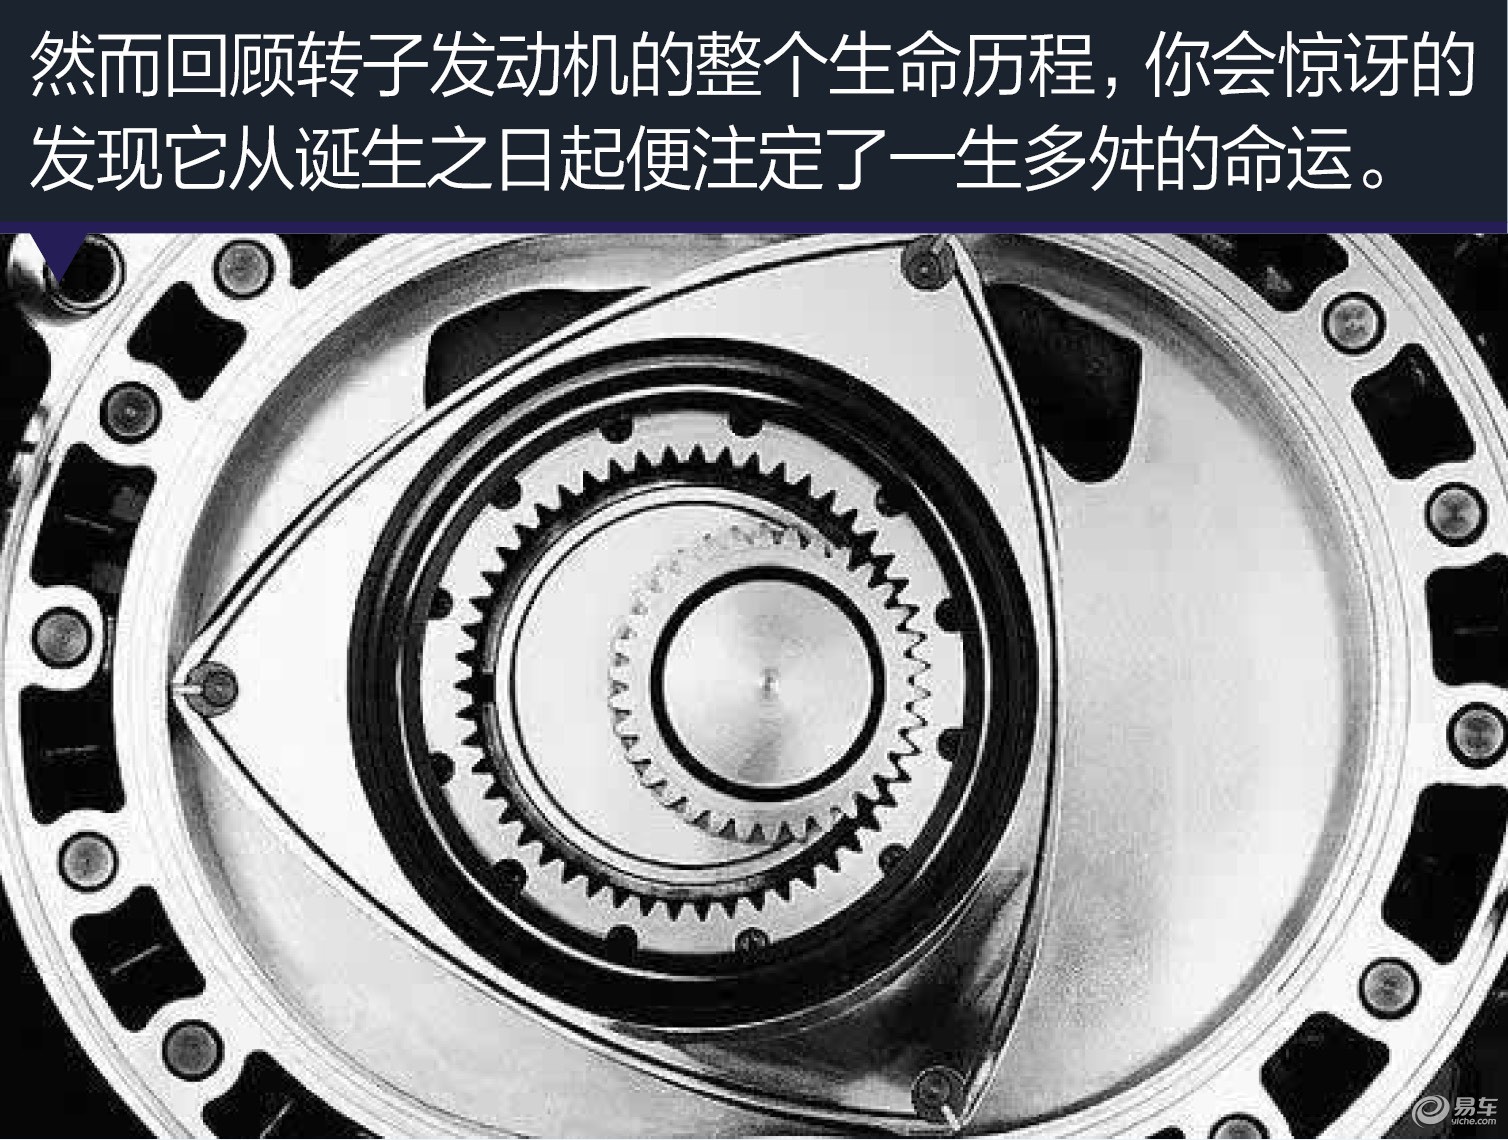 汽车产经网 正文页 从上世纪60年代马自达大手笔的购入转子发动机技术